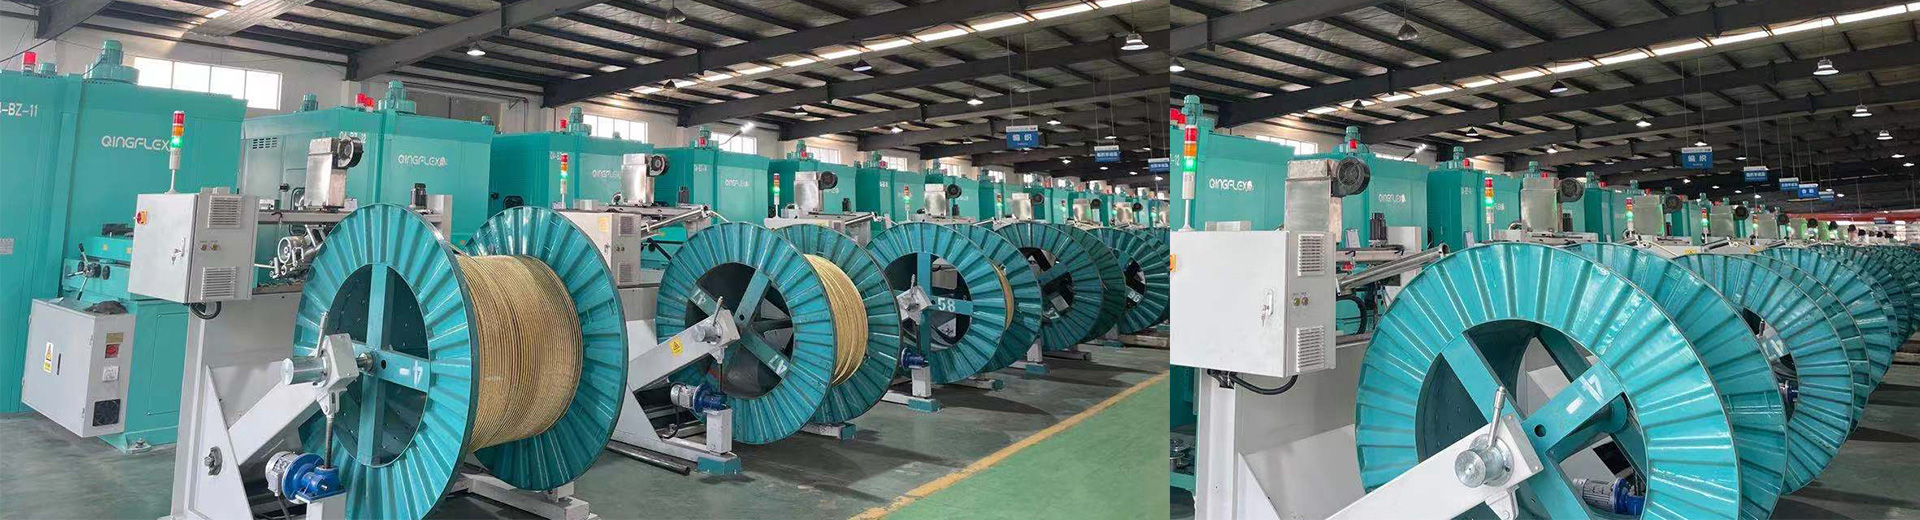 Swivel hose reel cart - Qingdao Xinquan industrial products Co., Ltd.